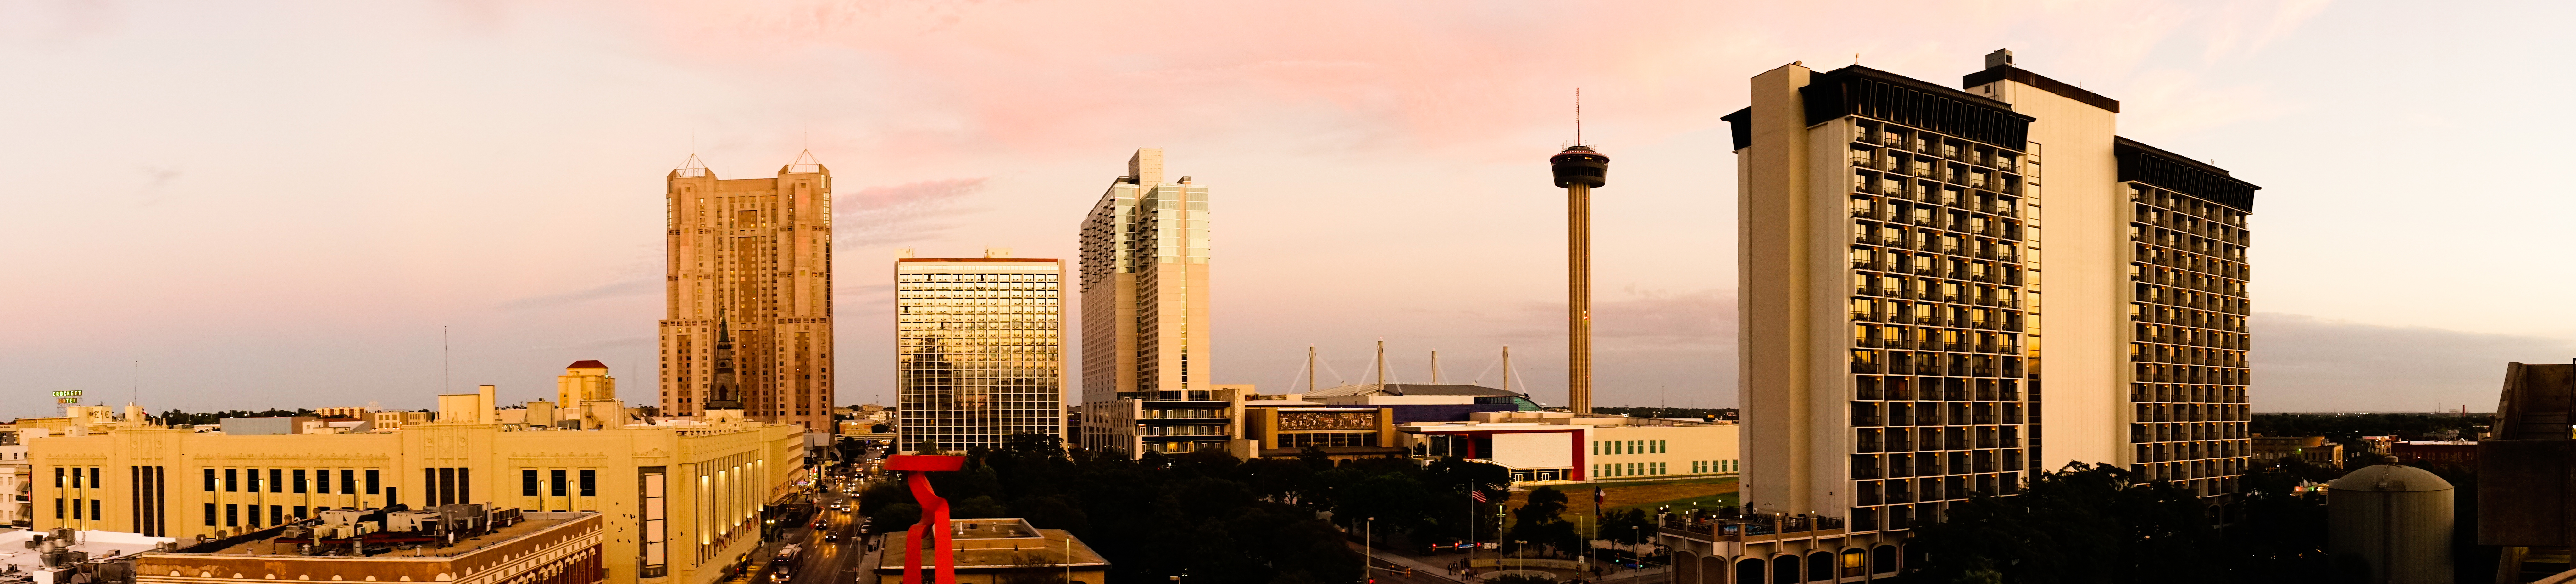 Downtown view of San Antonio Texas